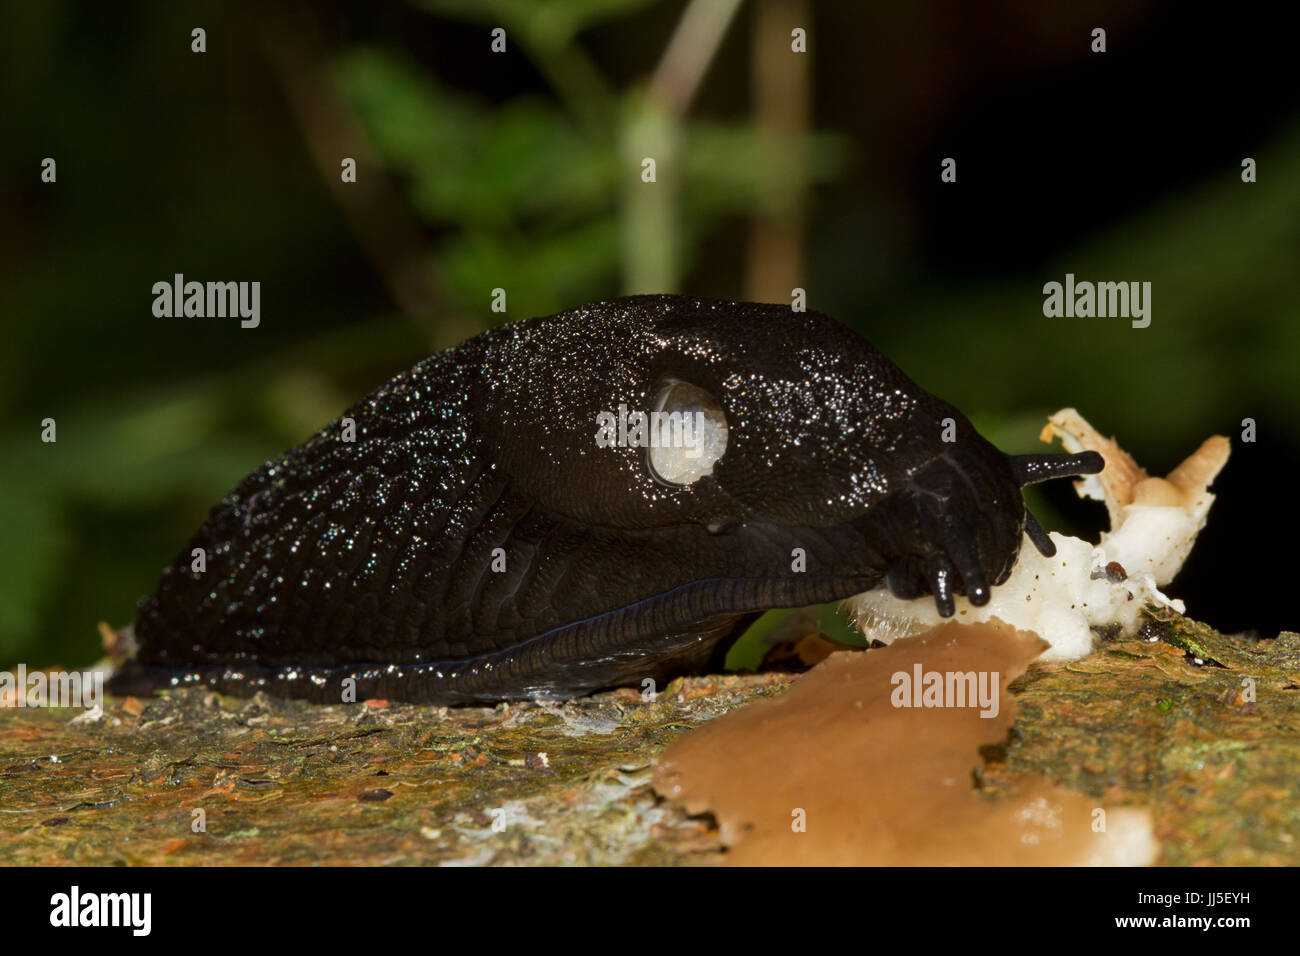 Black slug eating mushroom Stock Photo